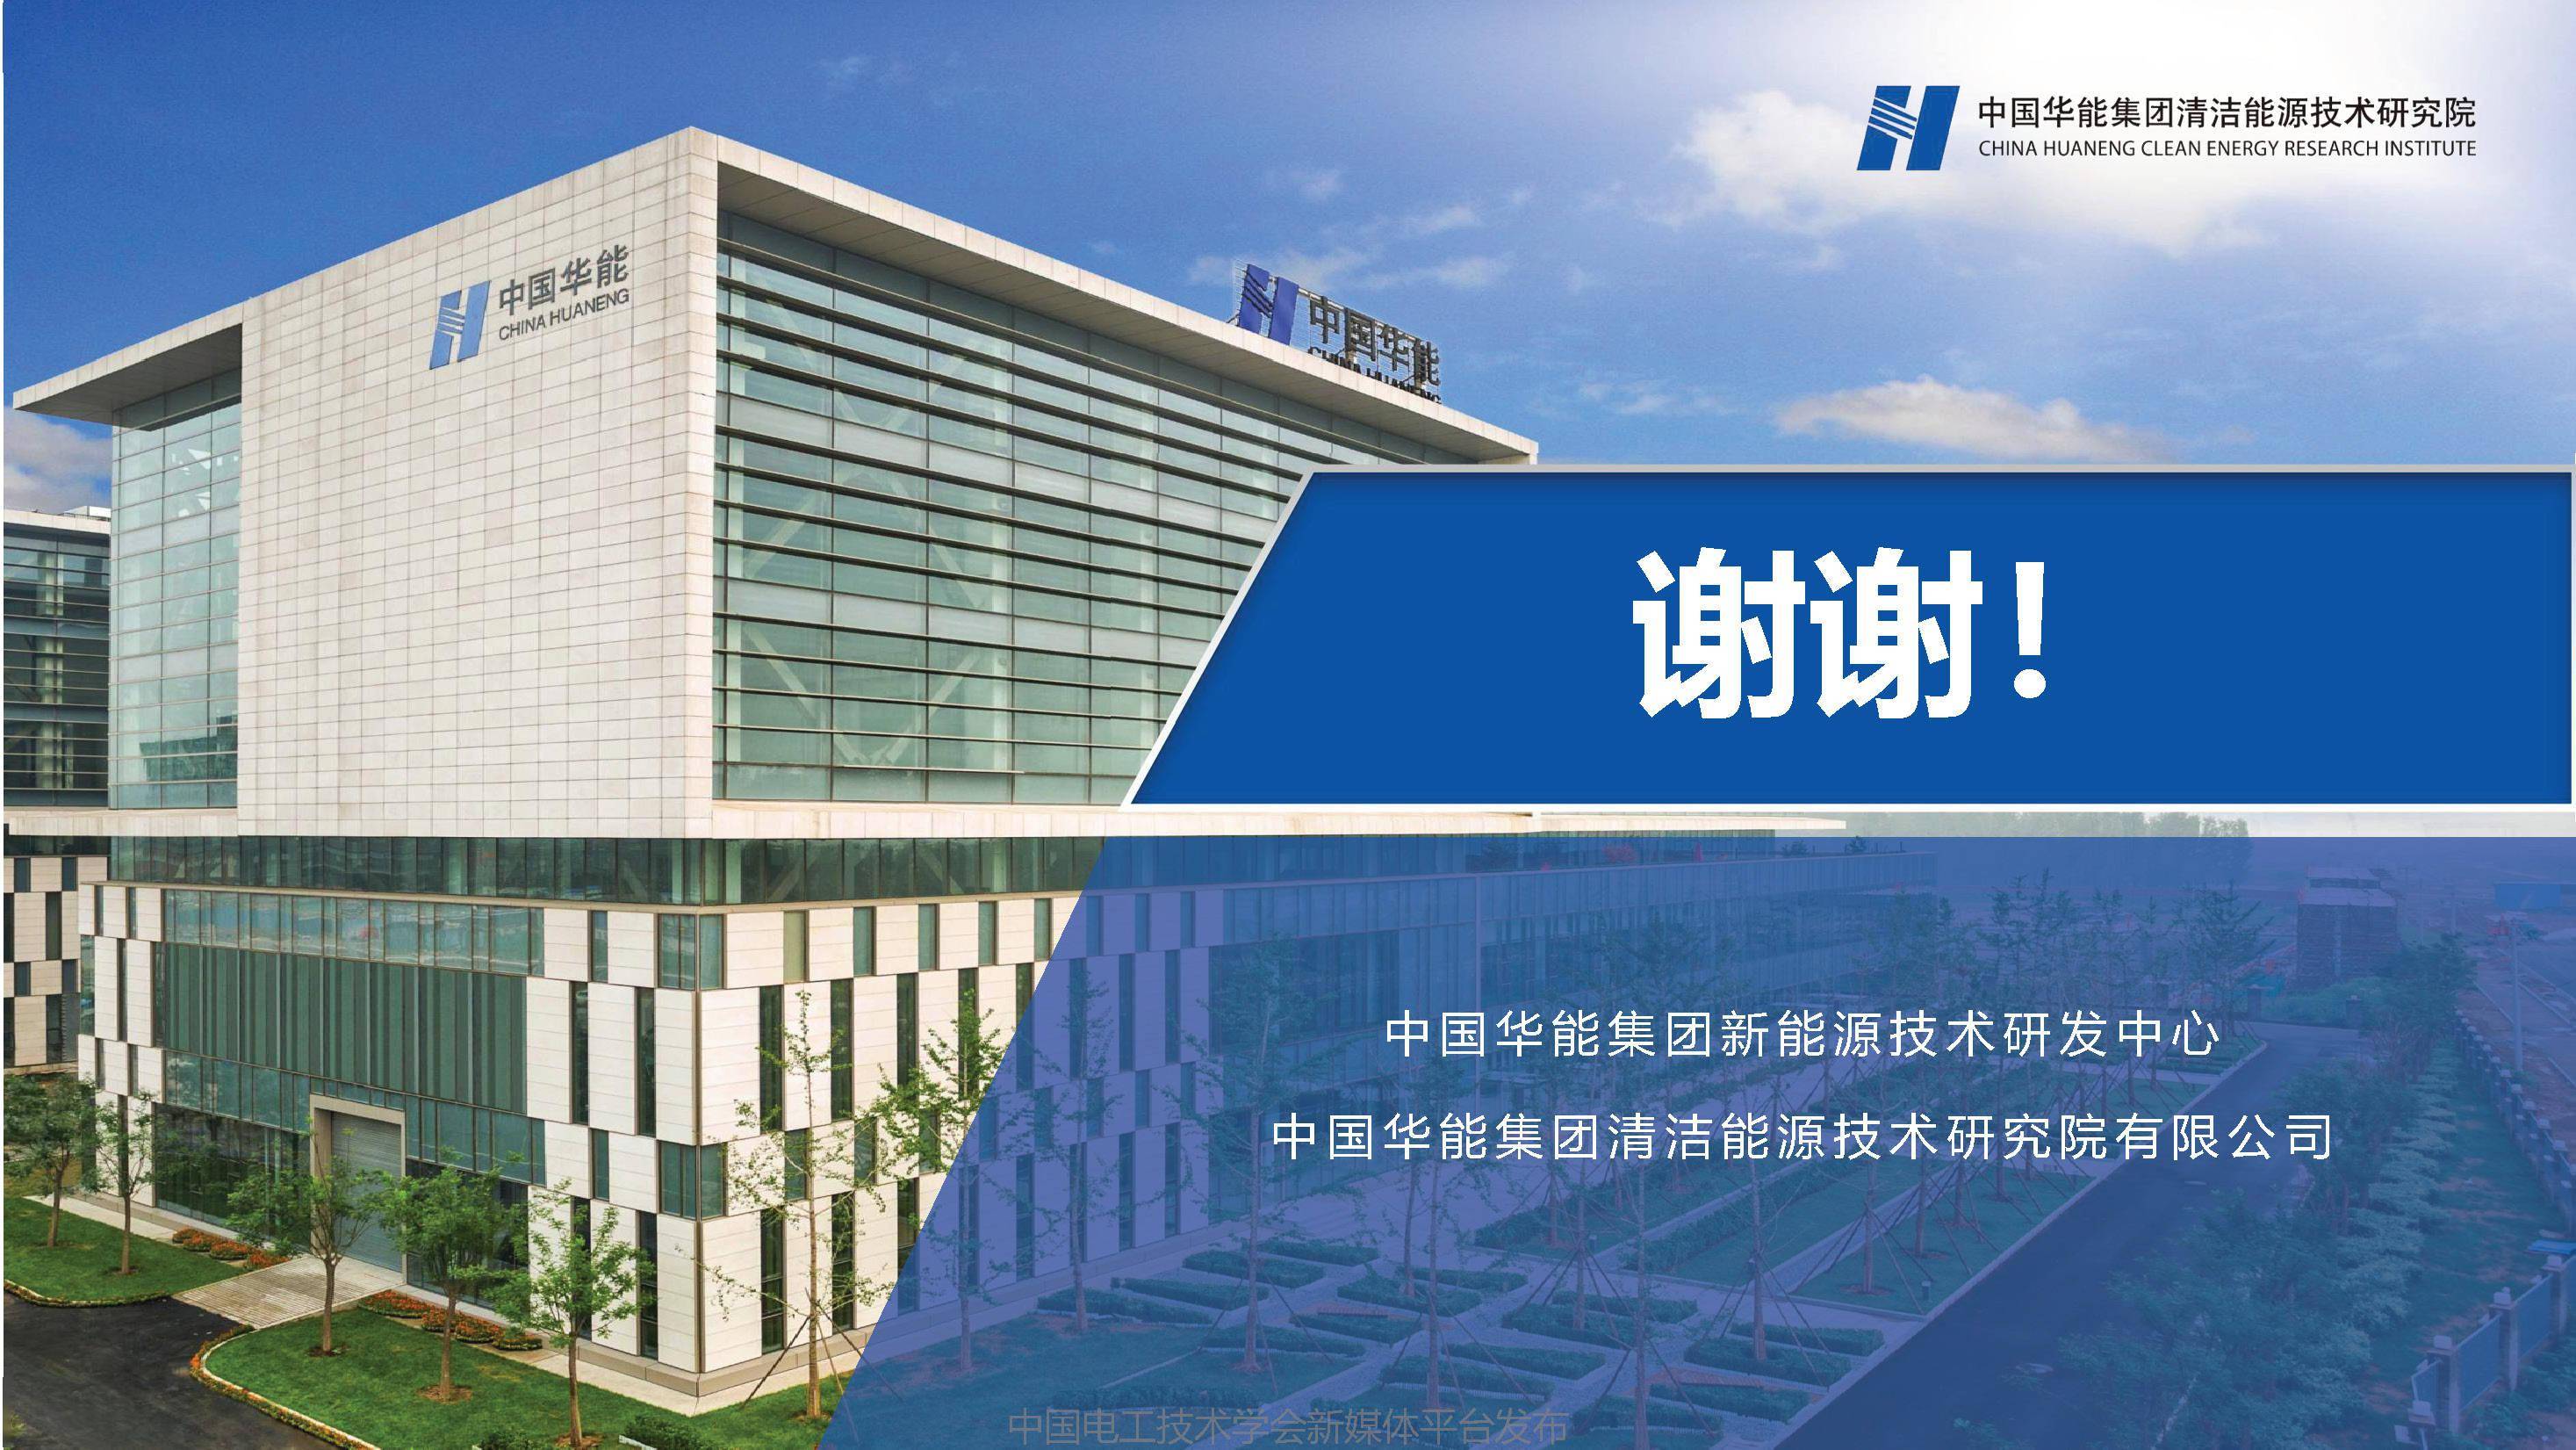 中国华能集团清洁能源技术研究院的电池储能技术路线,采取自主开发的